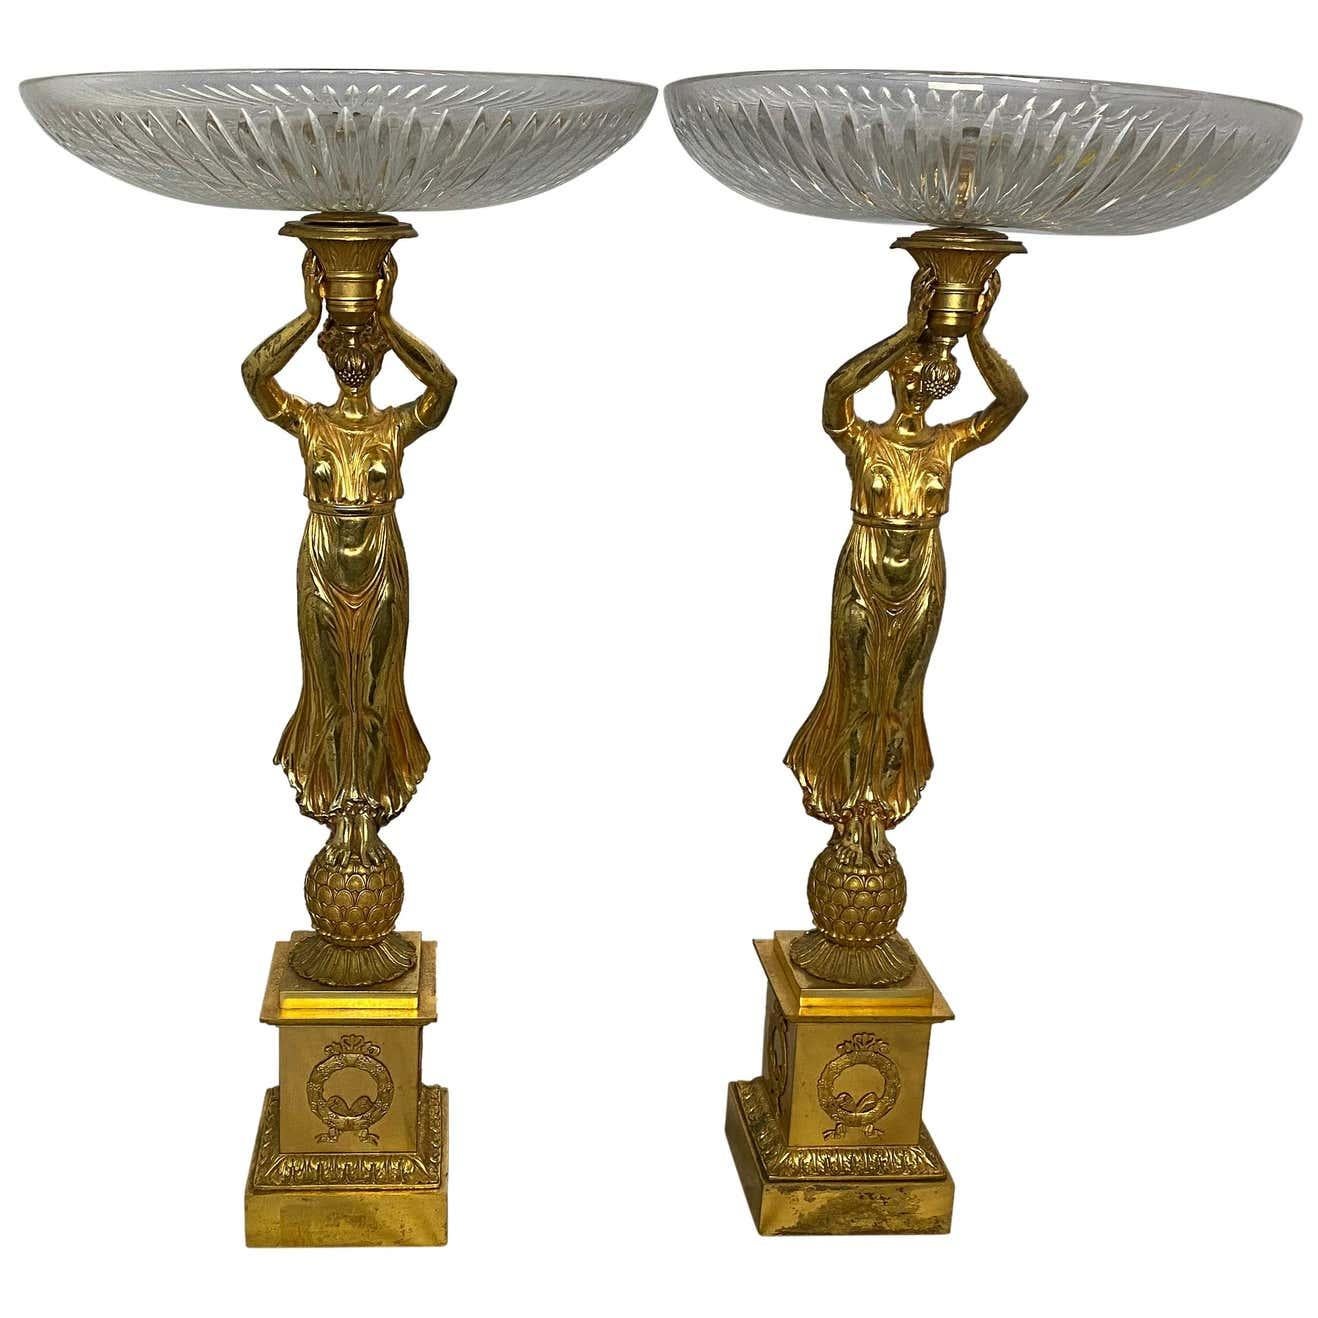 Une paire de Tazzas français allégoriques avec des bols en cristal taillé suspendus par des dames figuratives Aphrodite, et reposant sur des bases de piédestal avec des couronnes détaillées en bronze doré Empire sur les parois des plinthes. Parfait